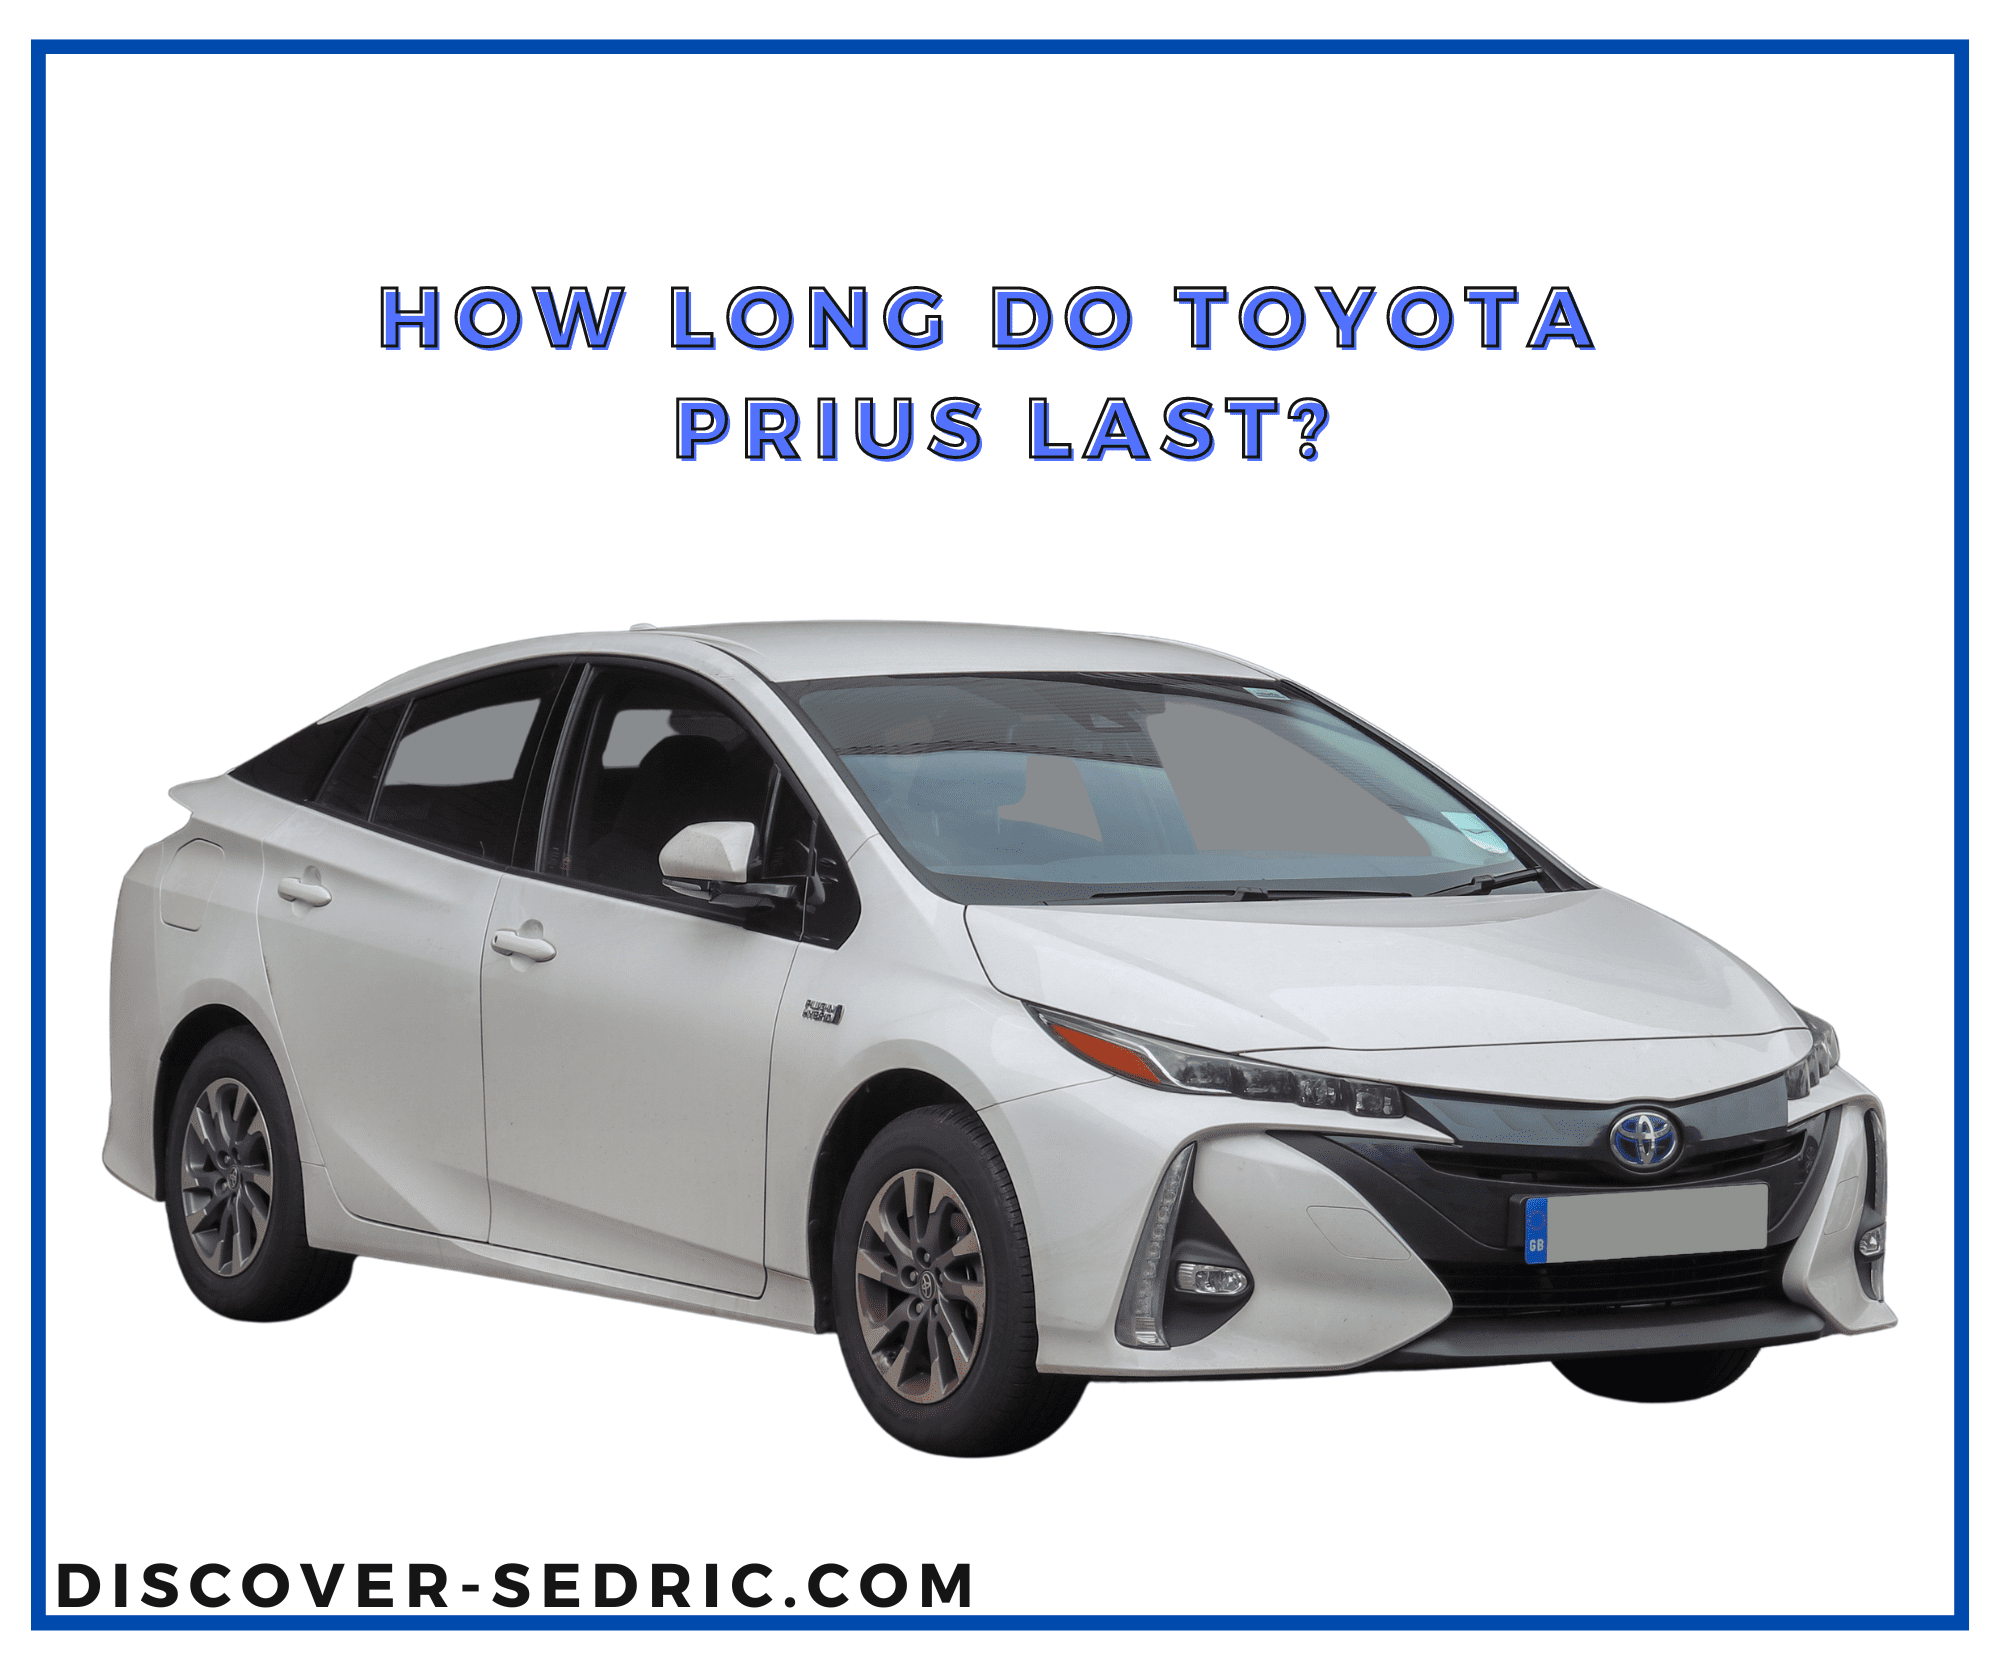 Toyota Prius last